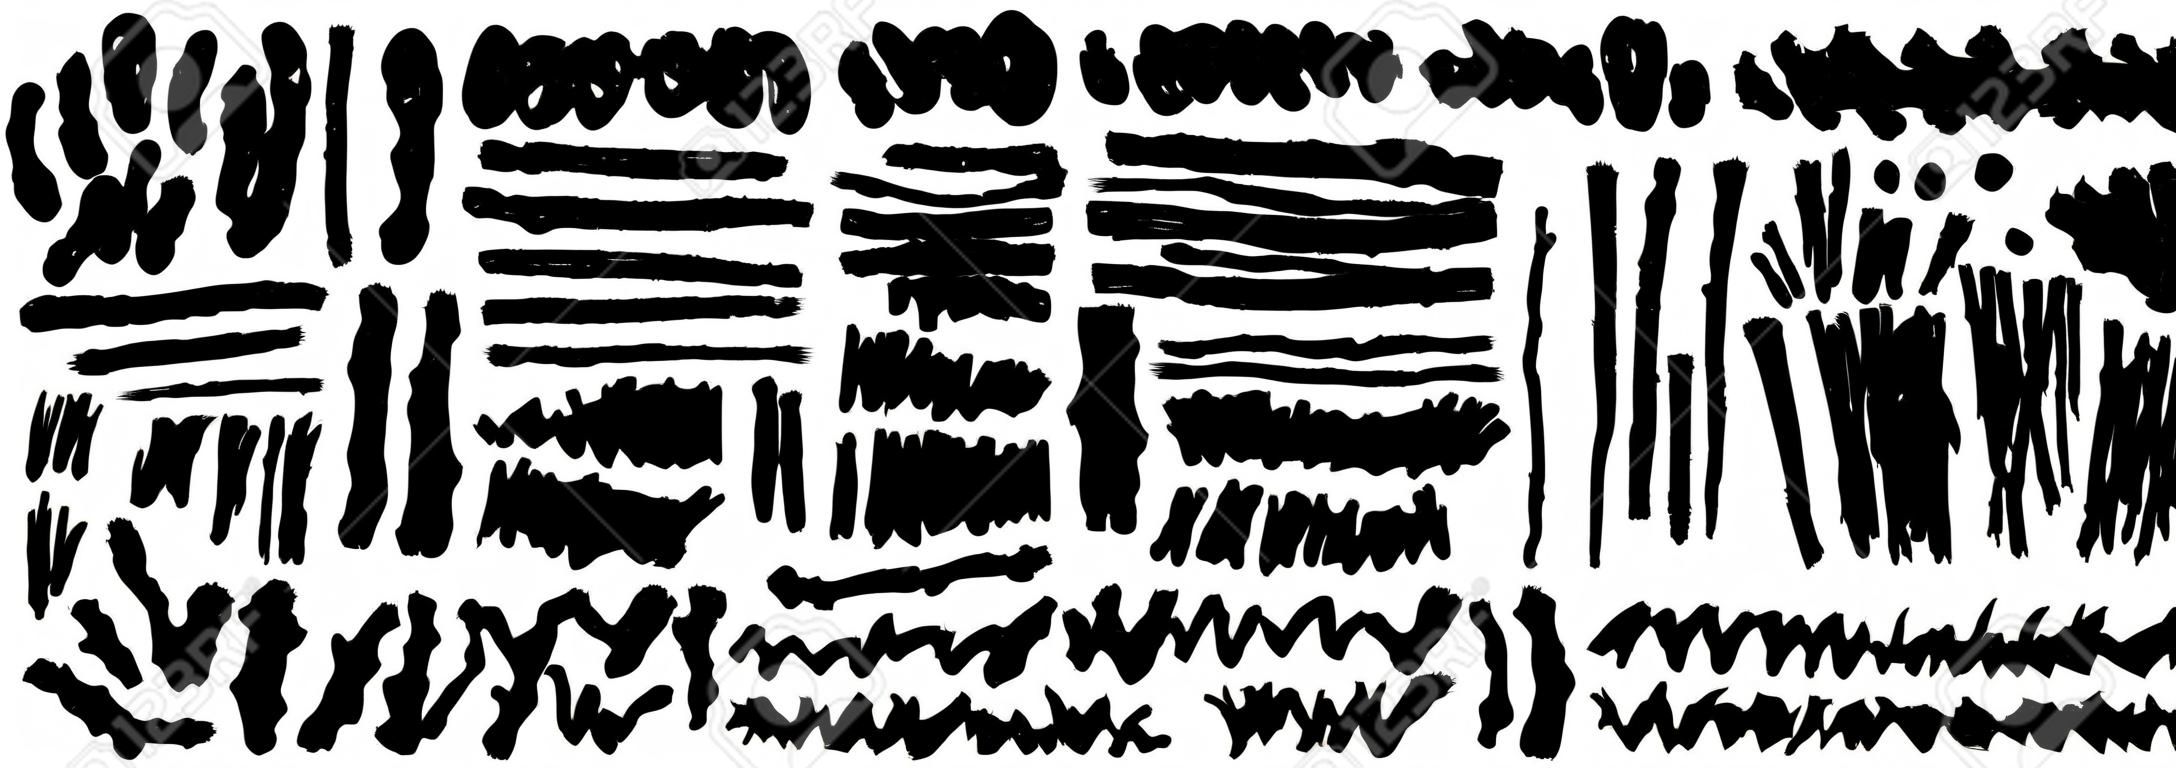 Satz von Hand zeichnet schwarze Farbe, Pinselstriche, Pinsel, Linien. Schmutzige künstlerische Grunge-Design-Elemente. Vektor